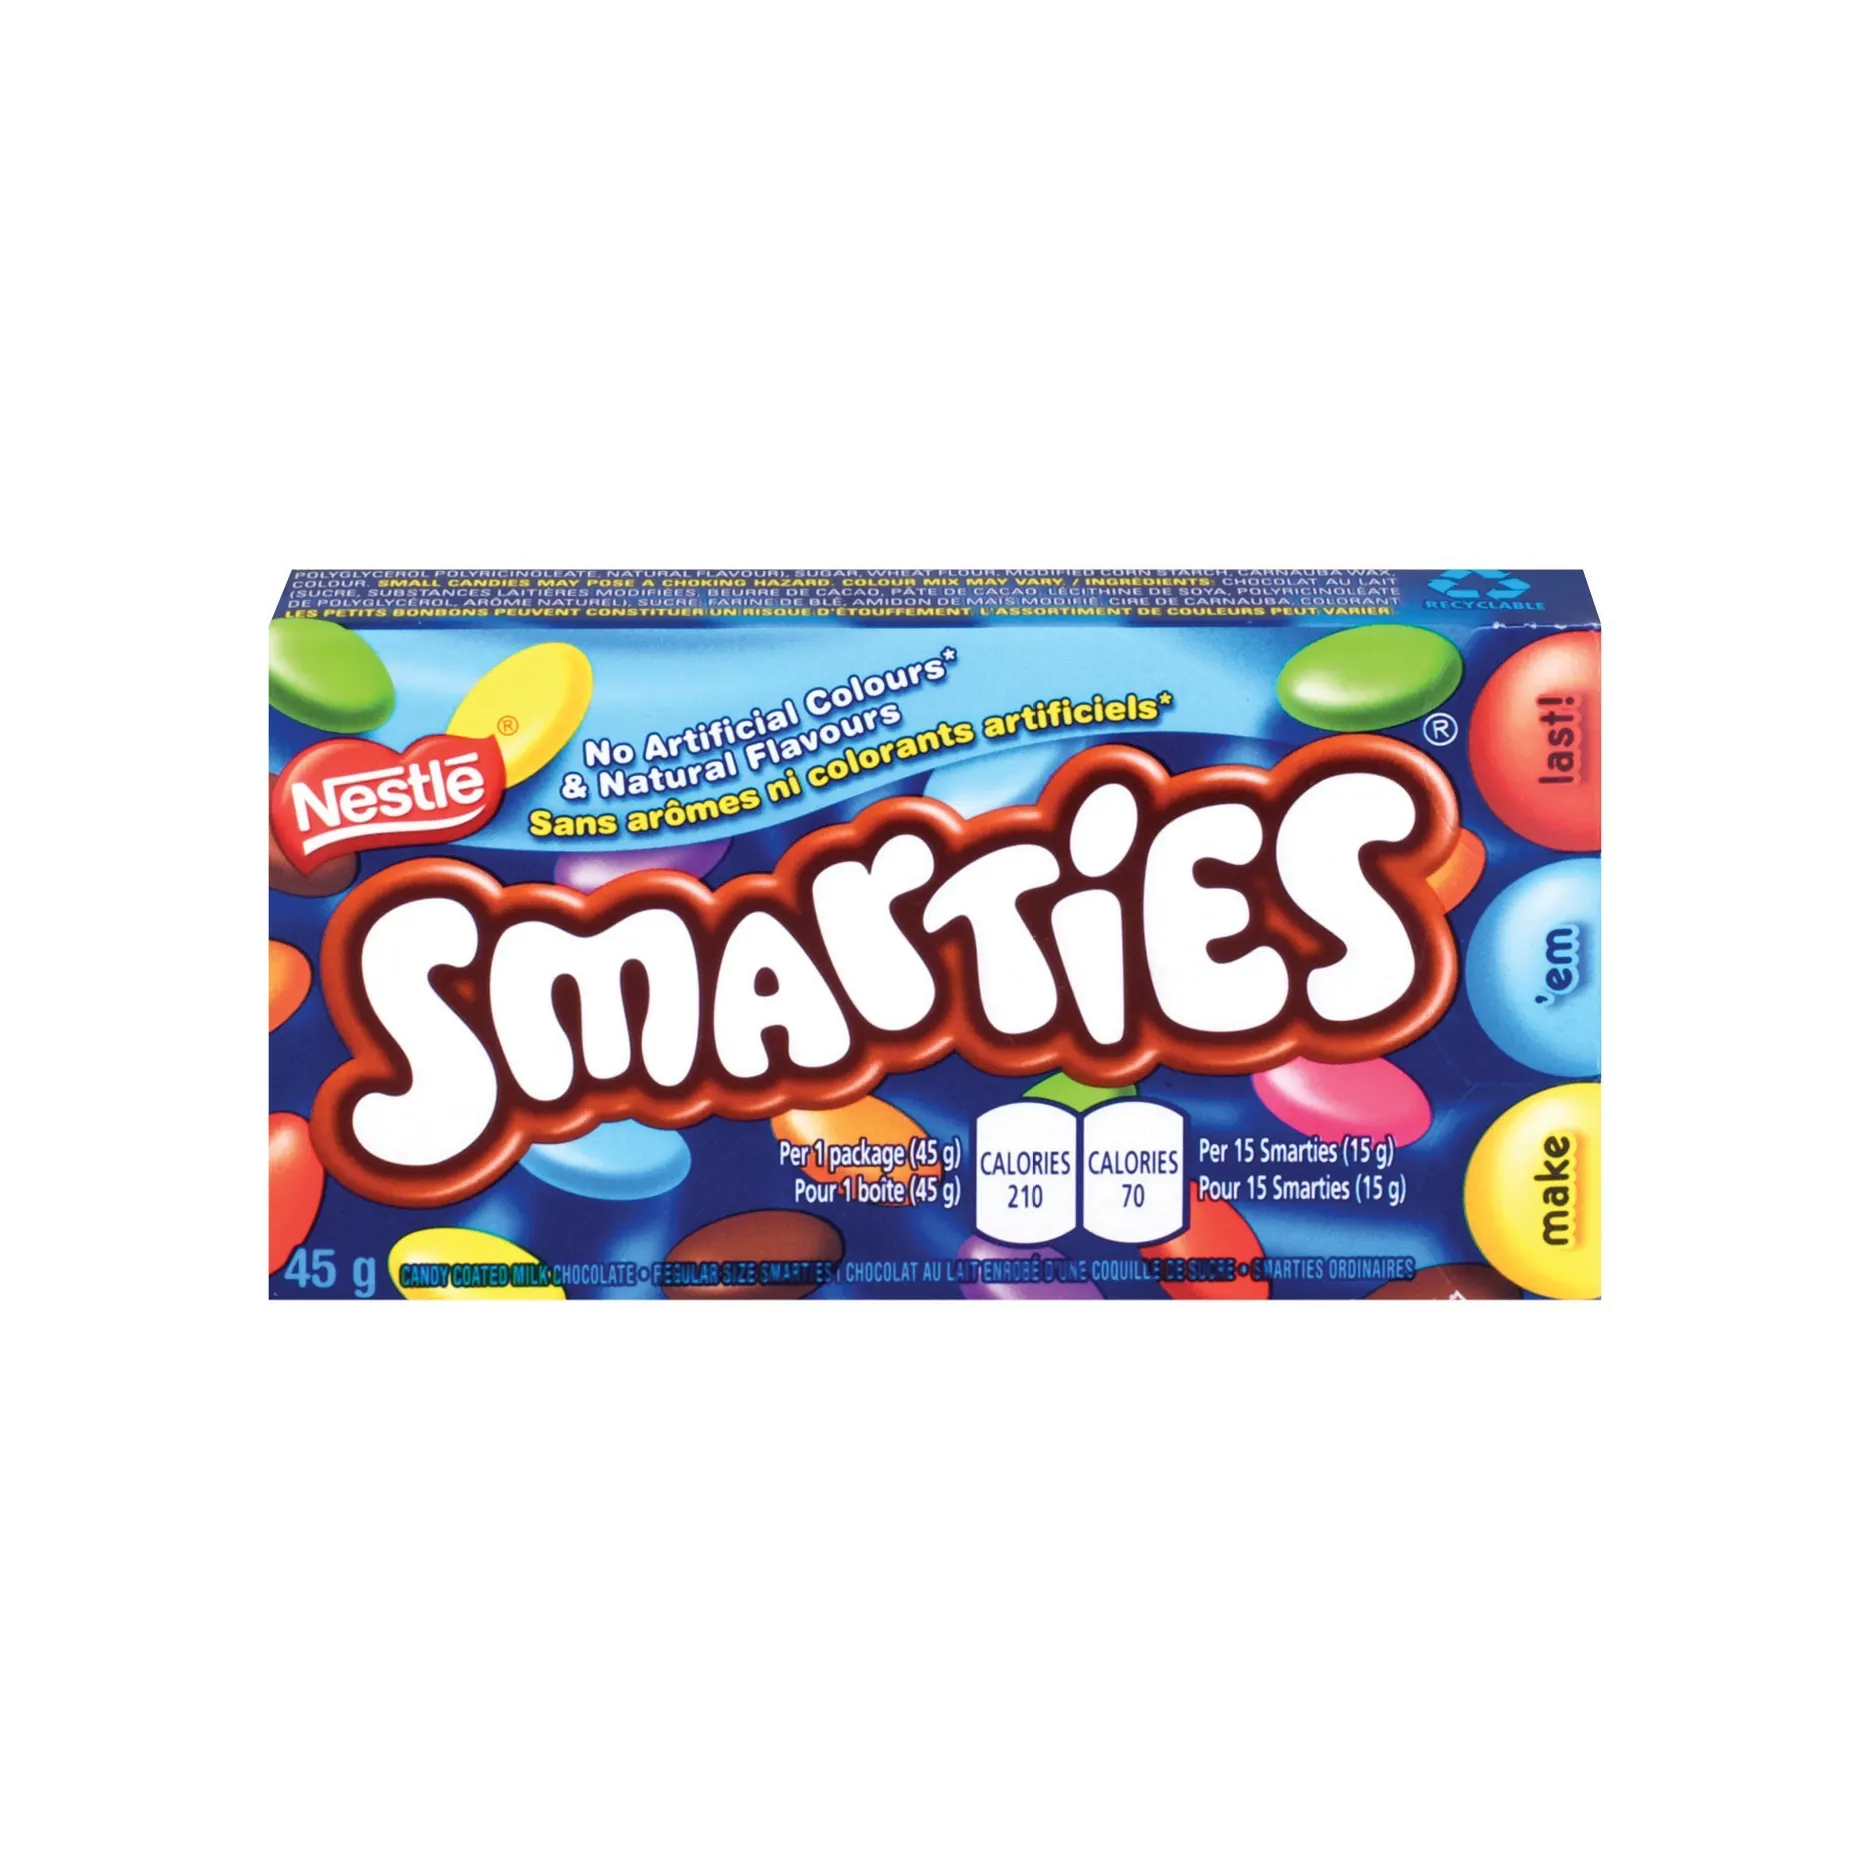 Sma-rties Candy Rolls Original Flavor Red Bulk Candy 3.2lbs 52oz Caramelo de desfile envuelto individualmente